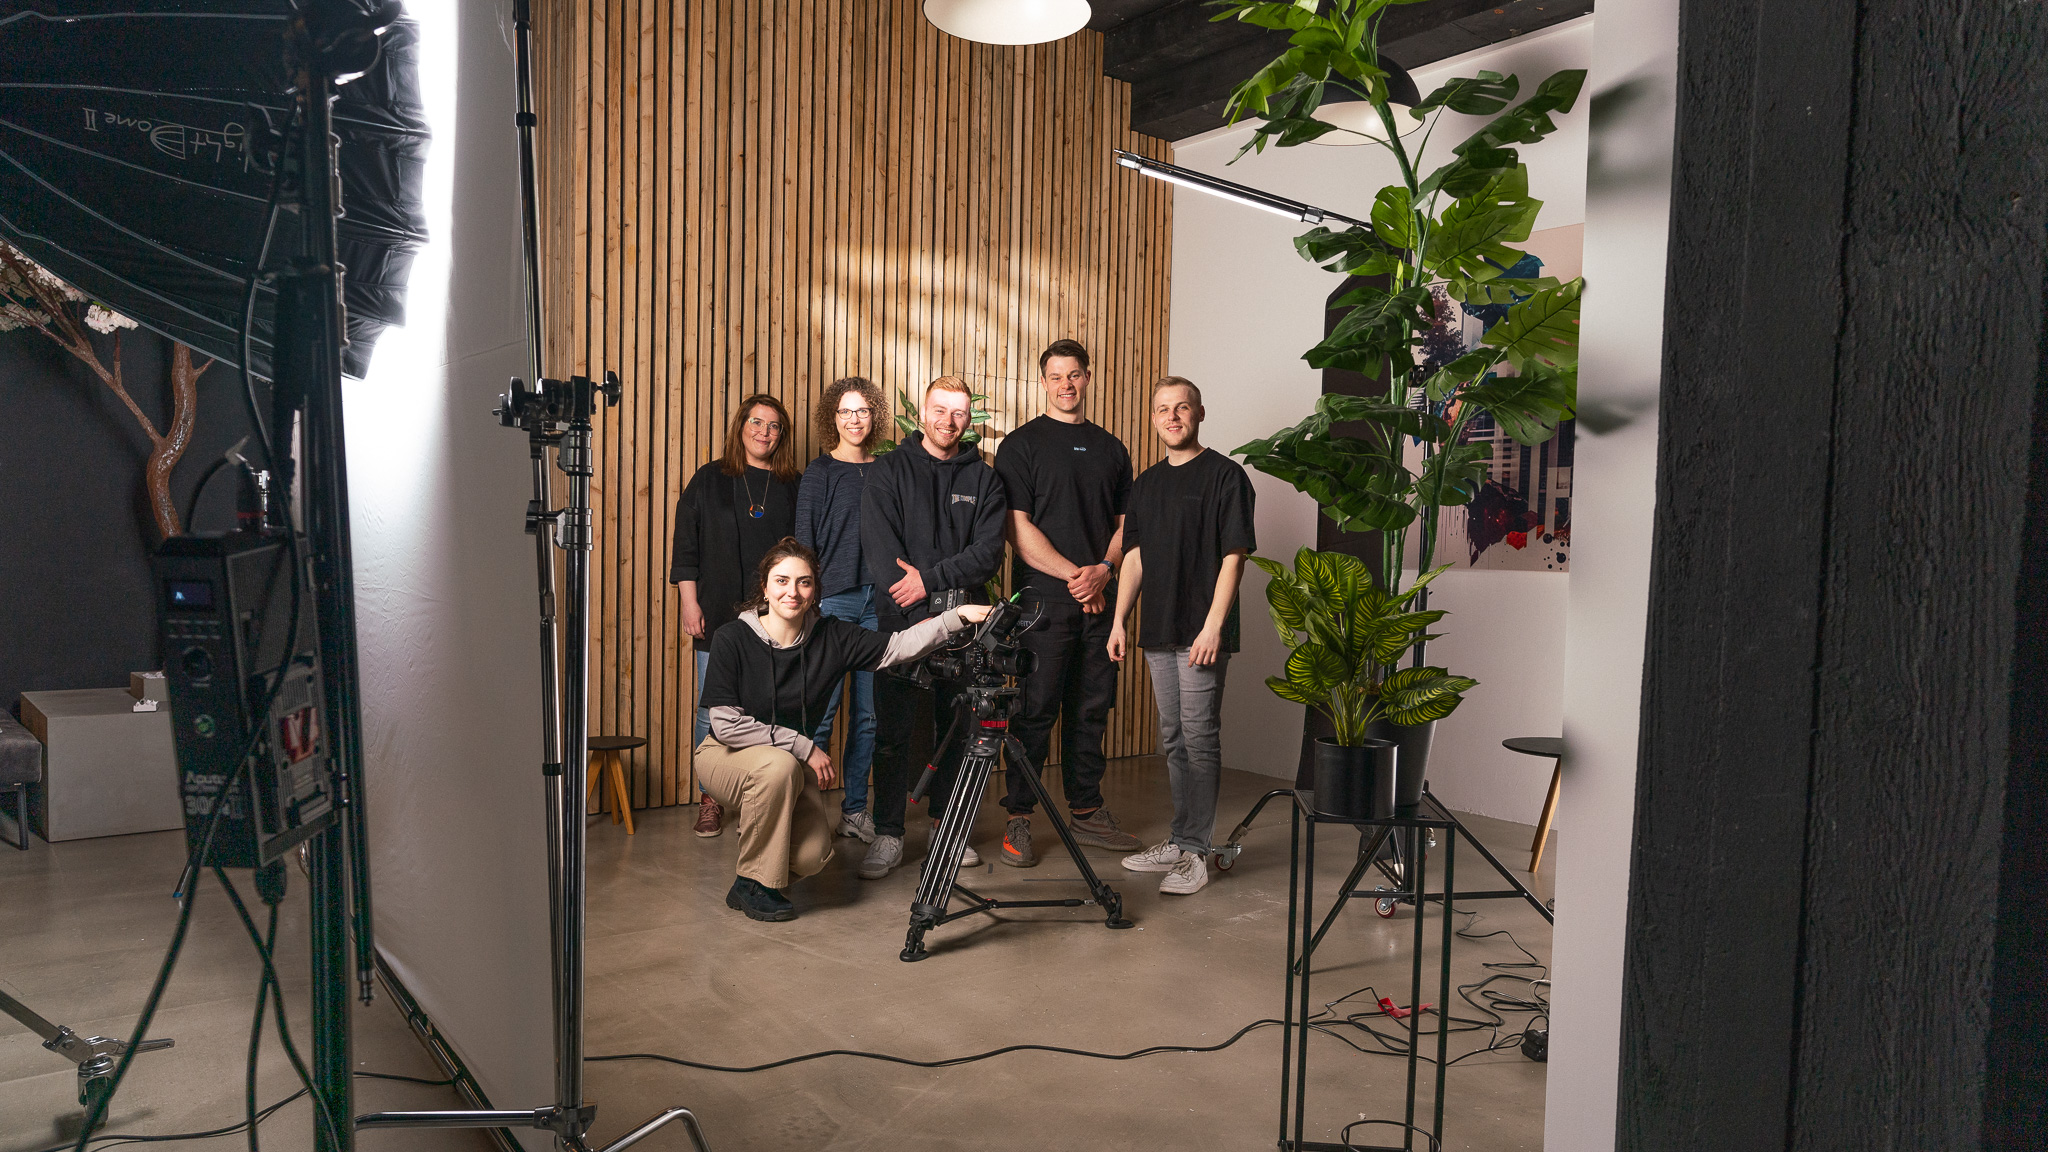 Gruppenbild bestehend aus dem Team der Werbeagentur twoseconds und der Marke Bofrost.